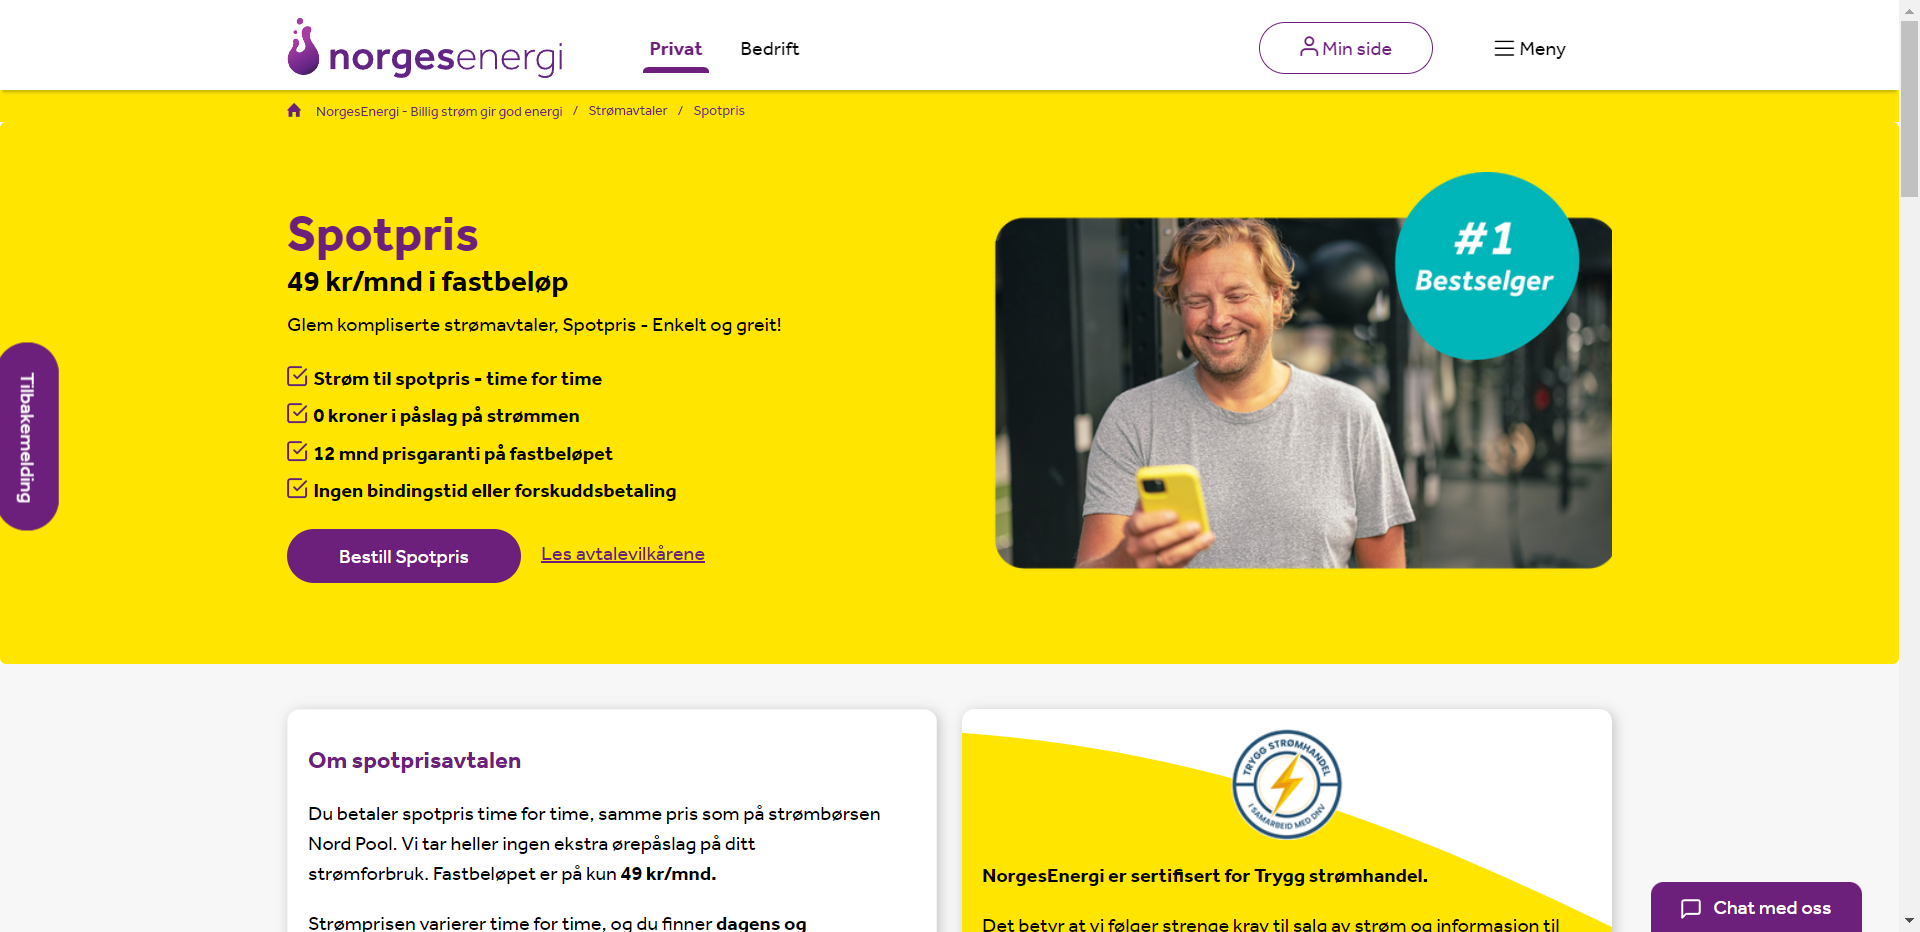 Norgesenergi nettbutikk - Les omtalen av nettbutikken